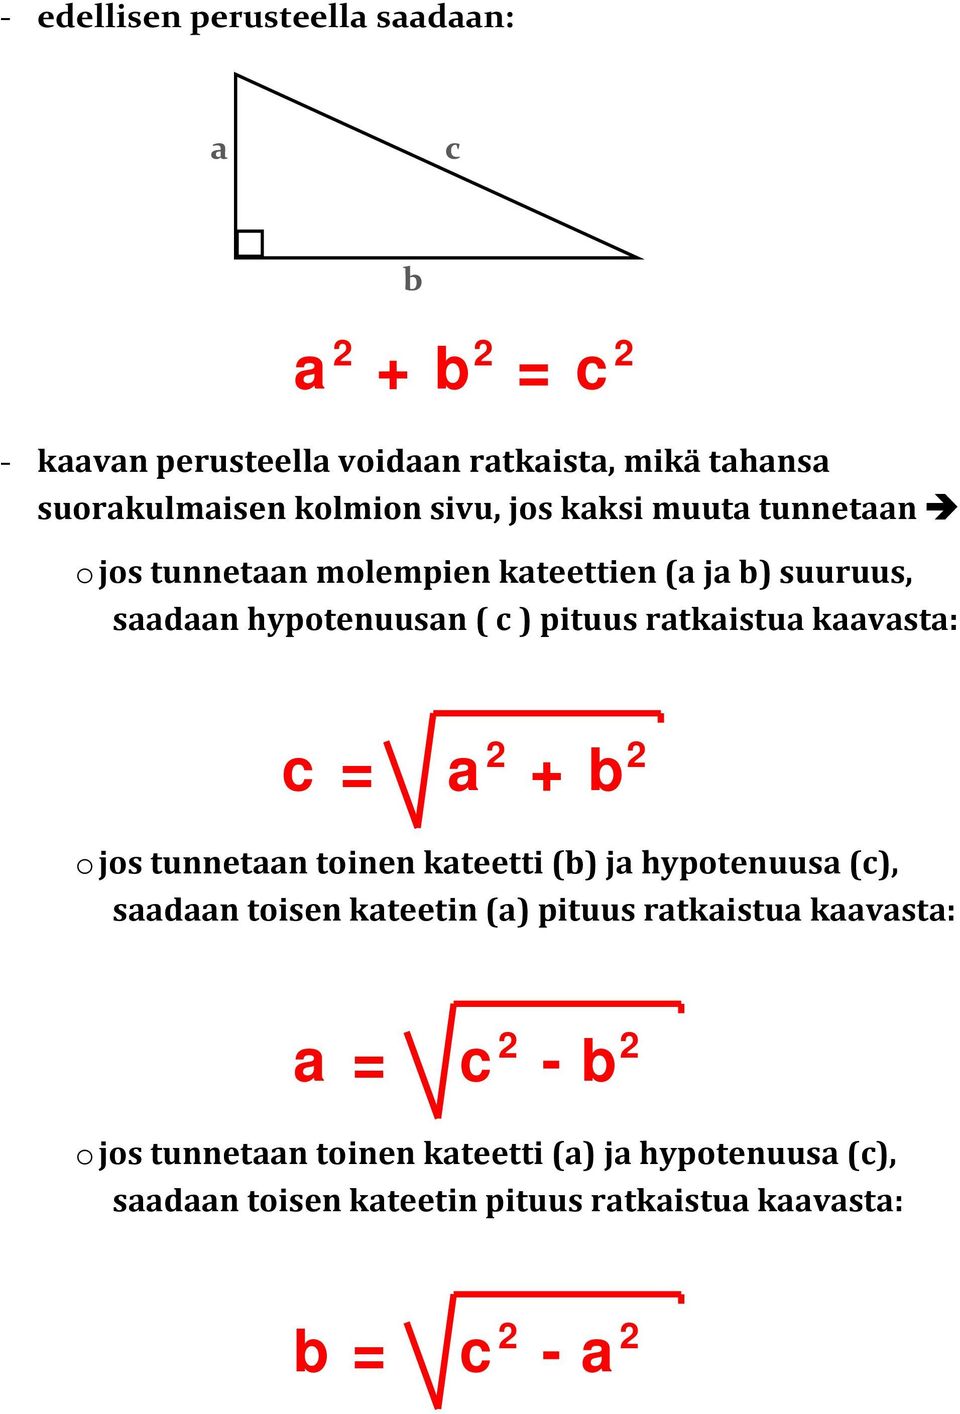 kaavasta: = a + o jos tunnetaan toinen kateetti () ja hypotenuusa (), saadaan toisen kateetin (a) pituus ratkaistua